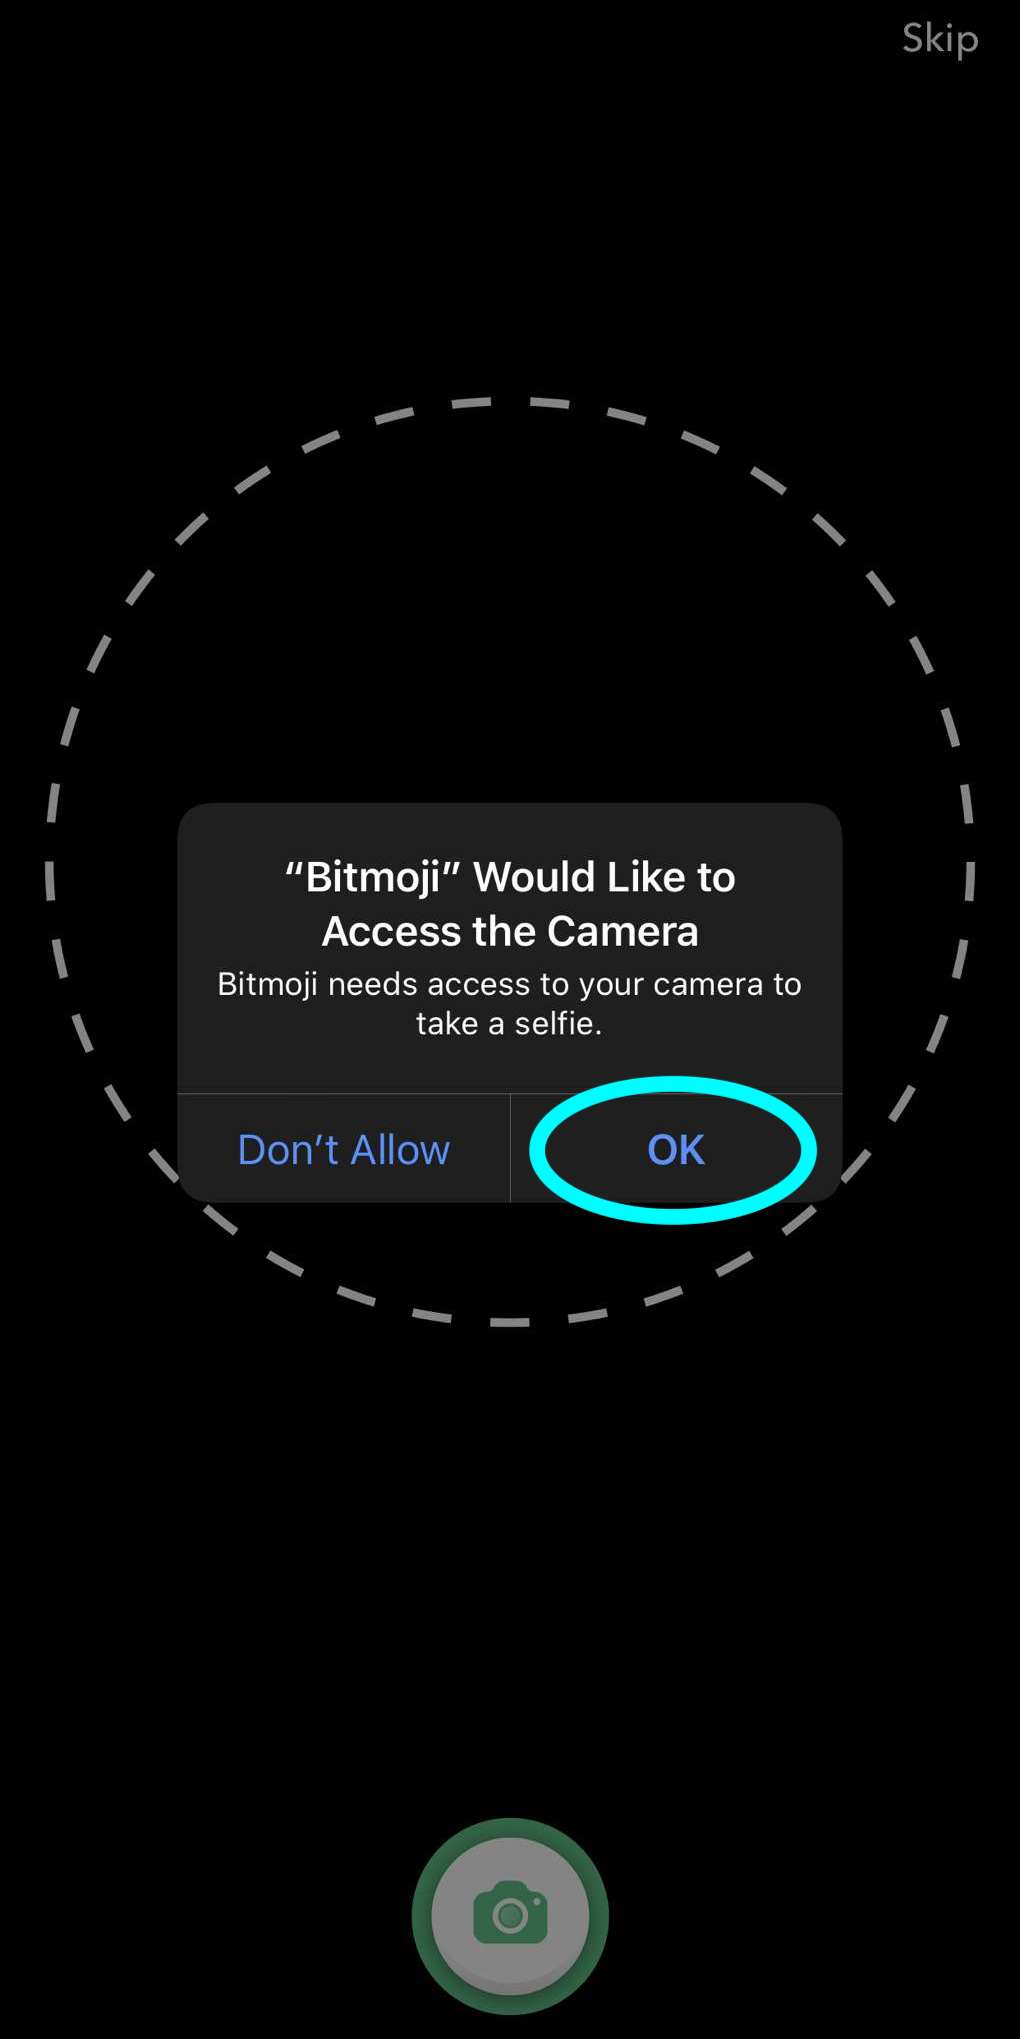 une fenêtre contextuelle pour autoriser Bitmoji à accéder à l'appareil photo, le bouton OK pour autoriser l'accès est mis en évidence